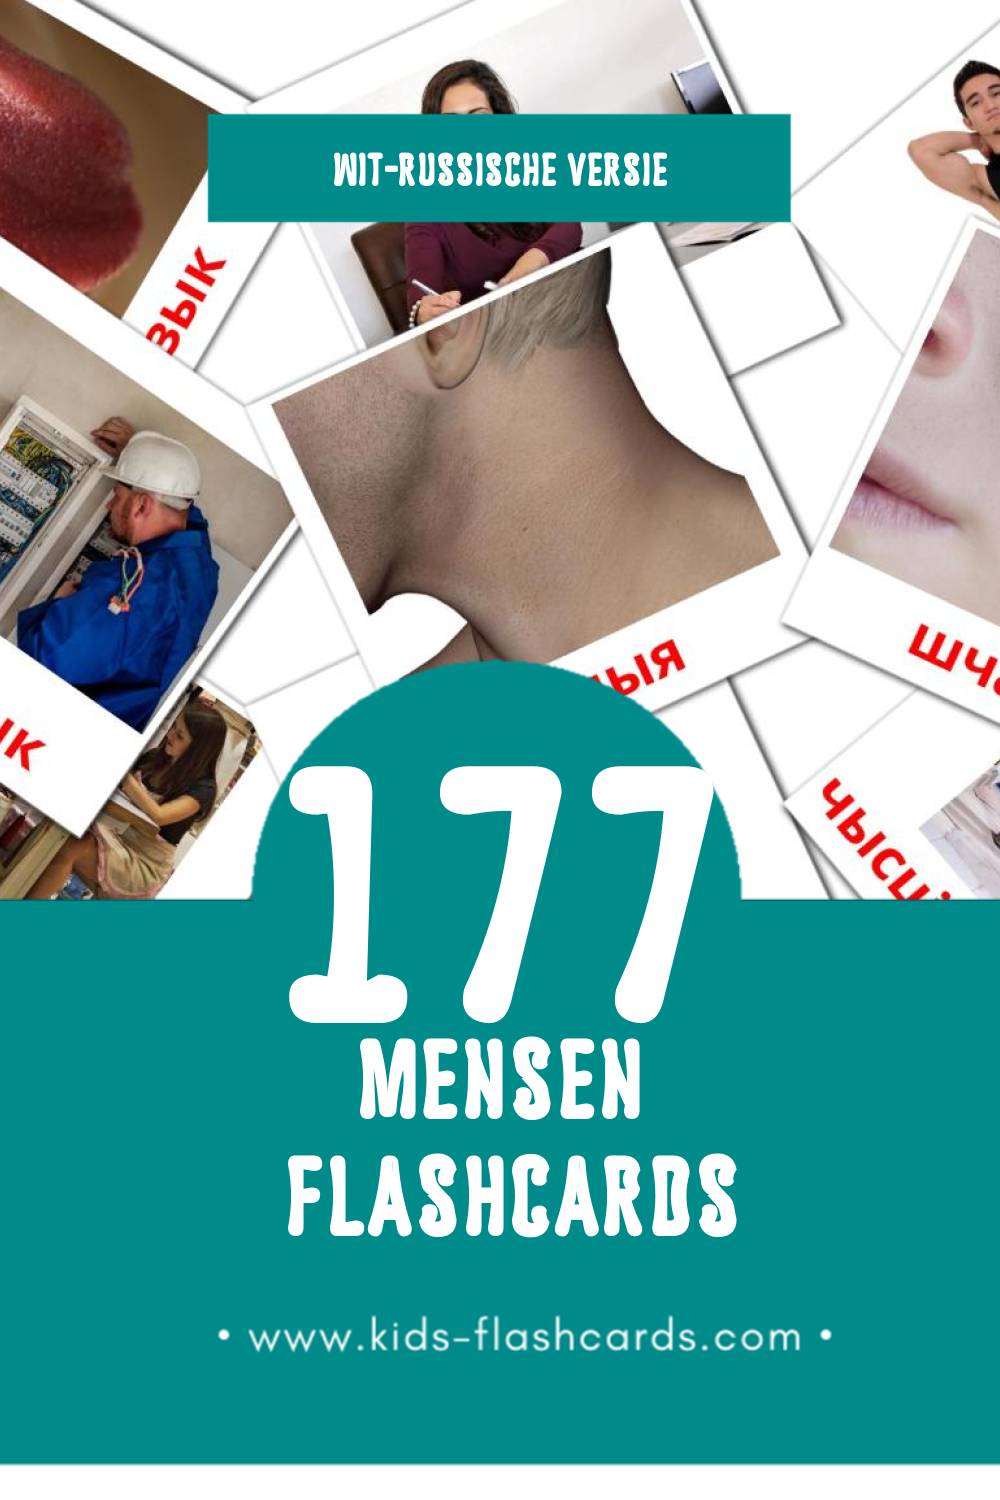 Visuele Людзі Flashcards voor Kleuters (177 kaarten in het Wit-russisch)